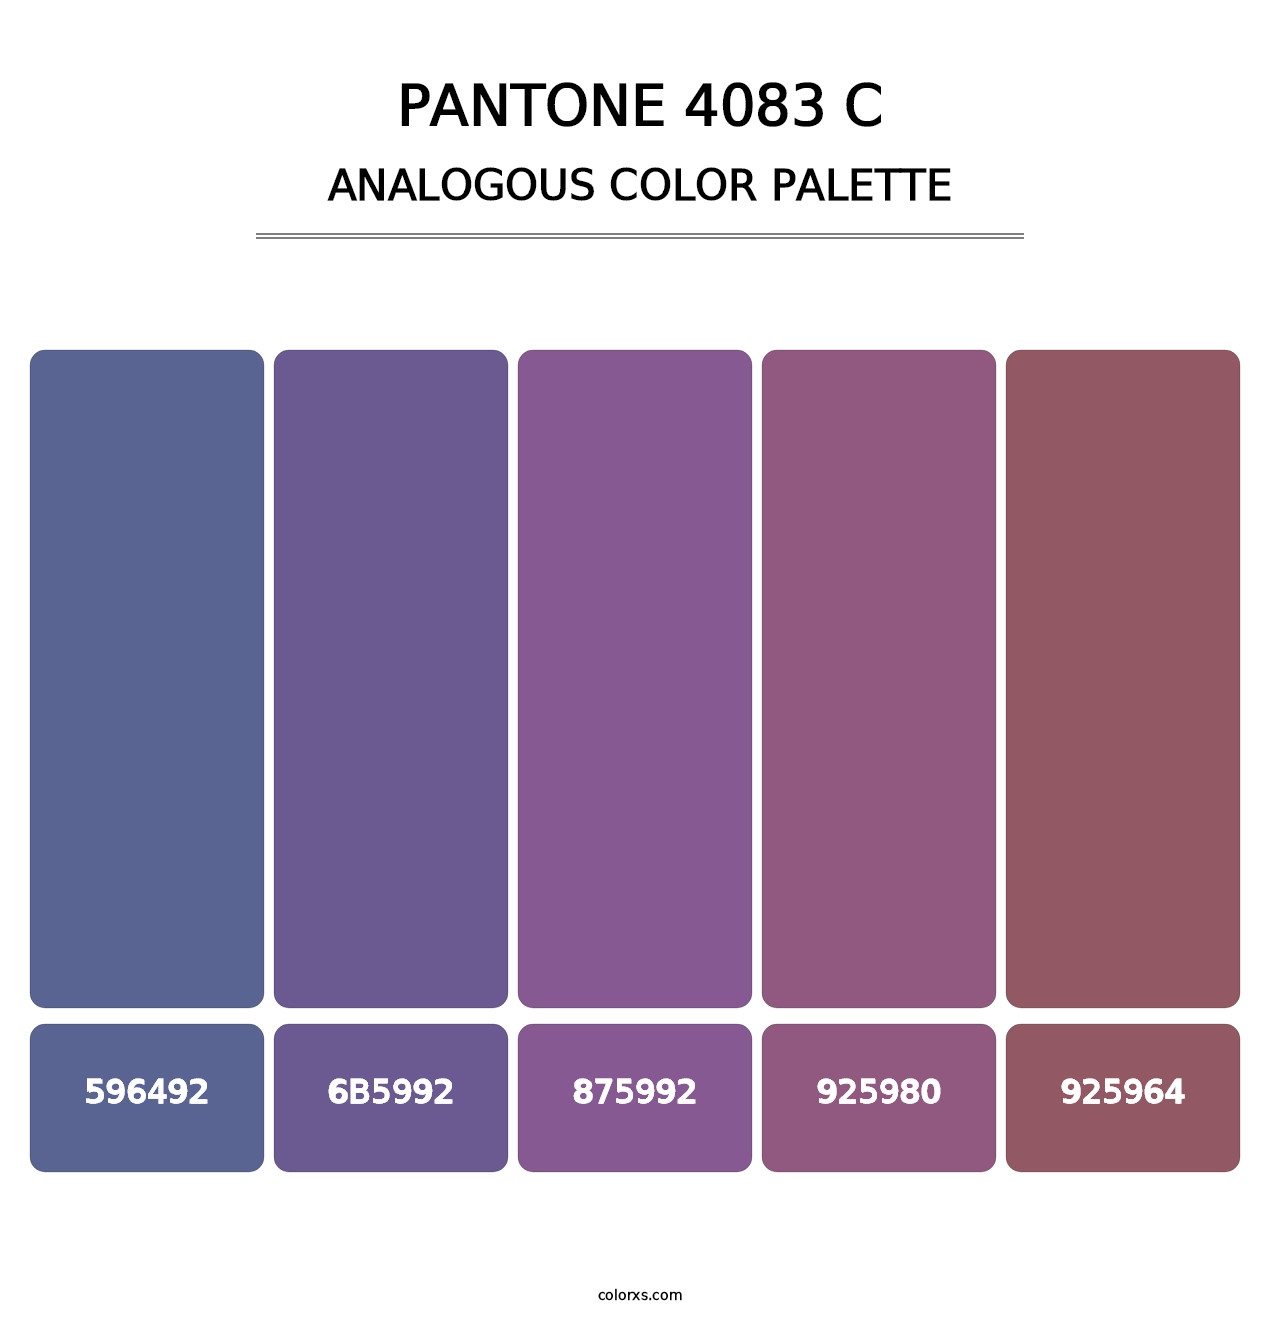 PANTONE 4083 C - Analogous Color Palette